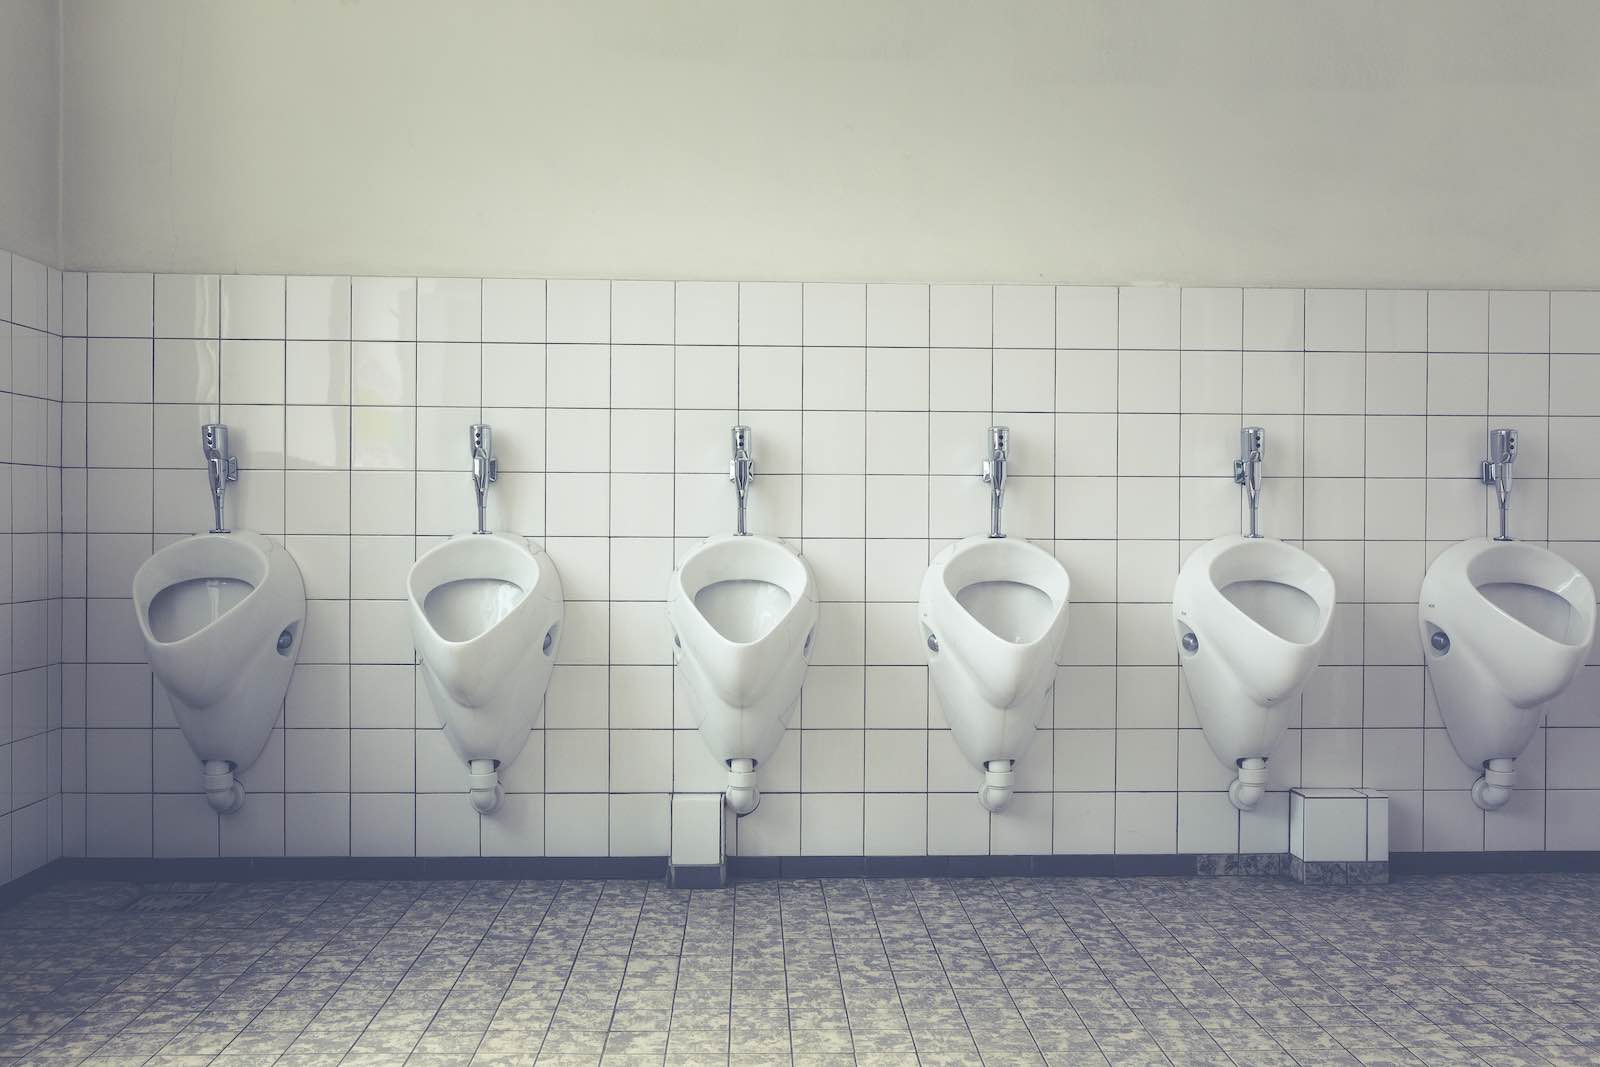 22 tysiące ludzi odpuściło sobie lekturę regulaminu WiFi – i zgodzili się na… czyszczenie toalet